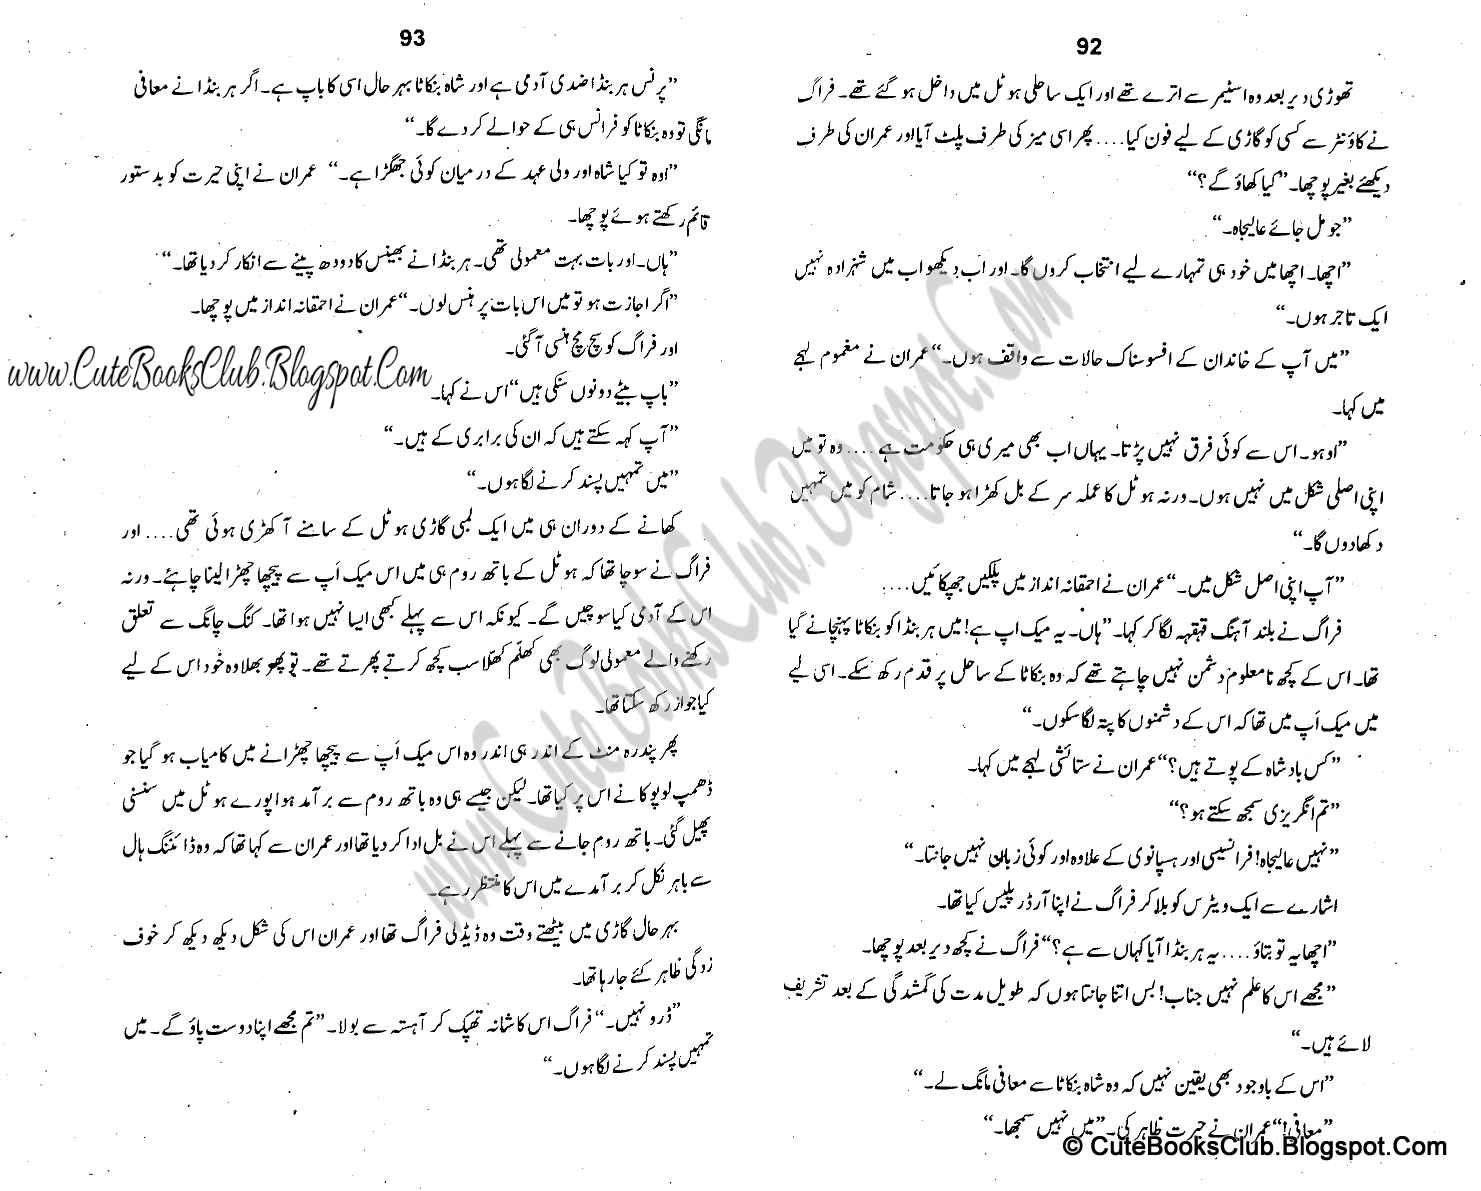 069-Dhuwain Ka Hisar, Imran Series By Ibne Safi (Urdu Novel)